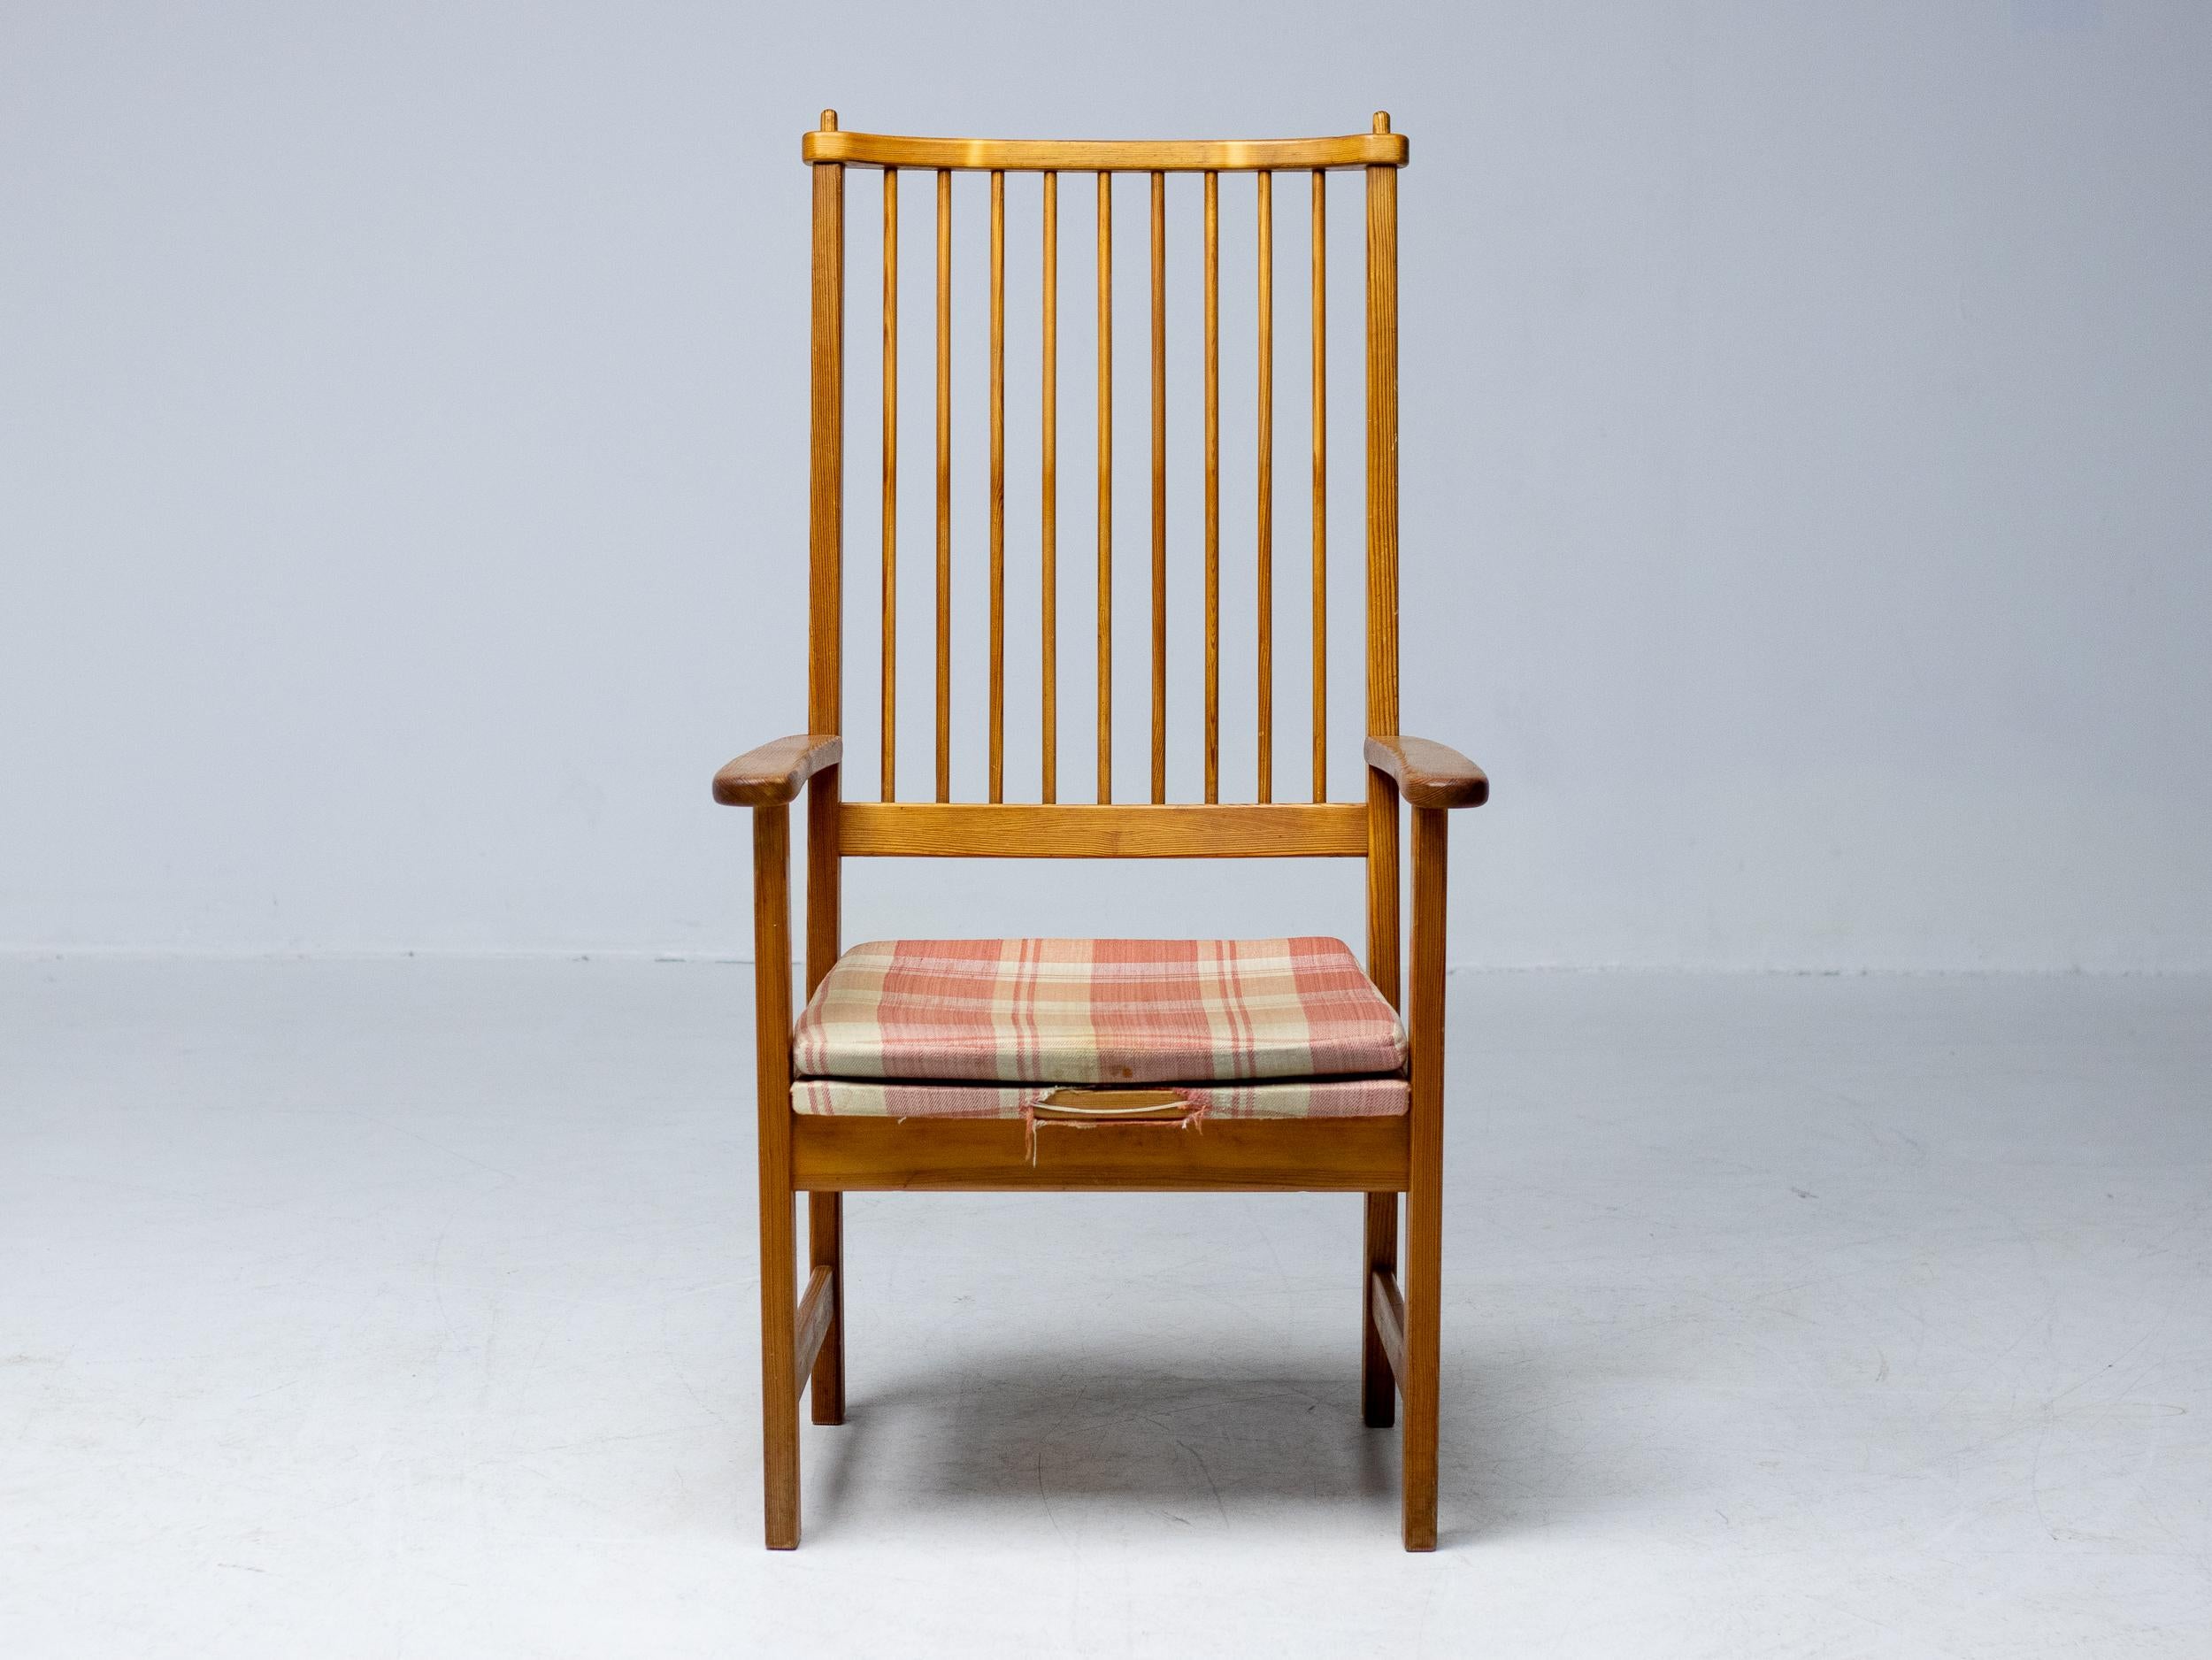 Le fondateur de Swedese, Yngve Ekström, était l'un des principaux designers de meubles suédois dans les années 1950 et 1960. L'élégance organique et soignée de cette chaise est typique de l'approche d'Eleg en matière de conception de mobilier, qui